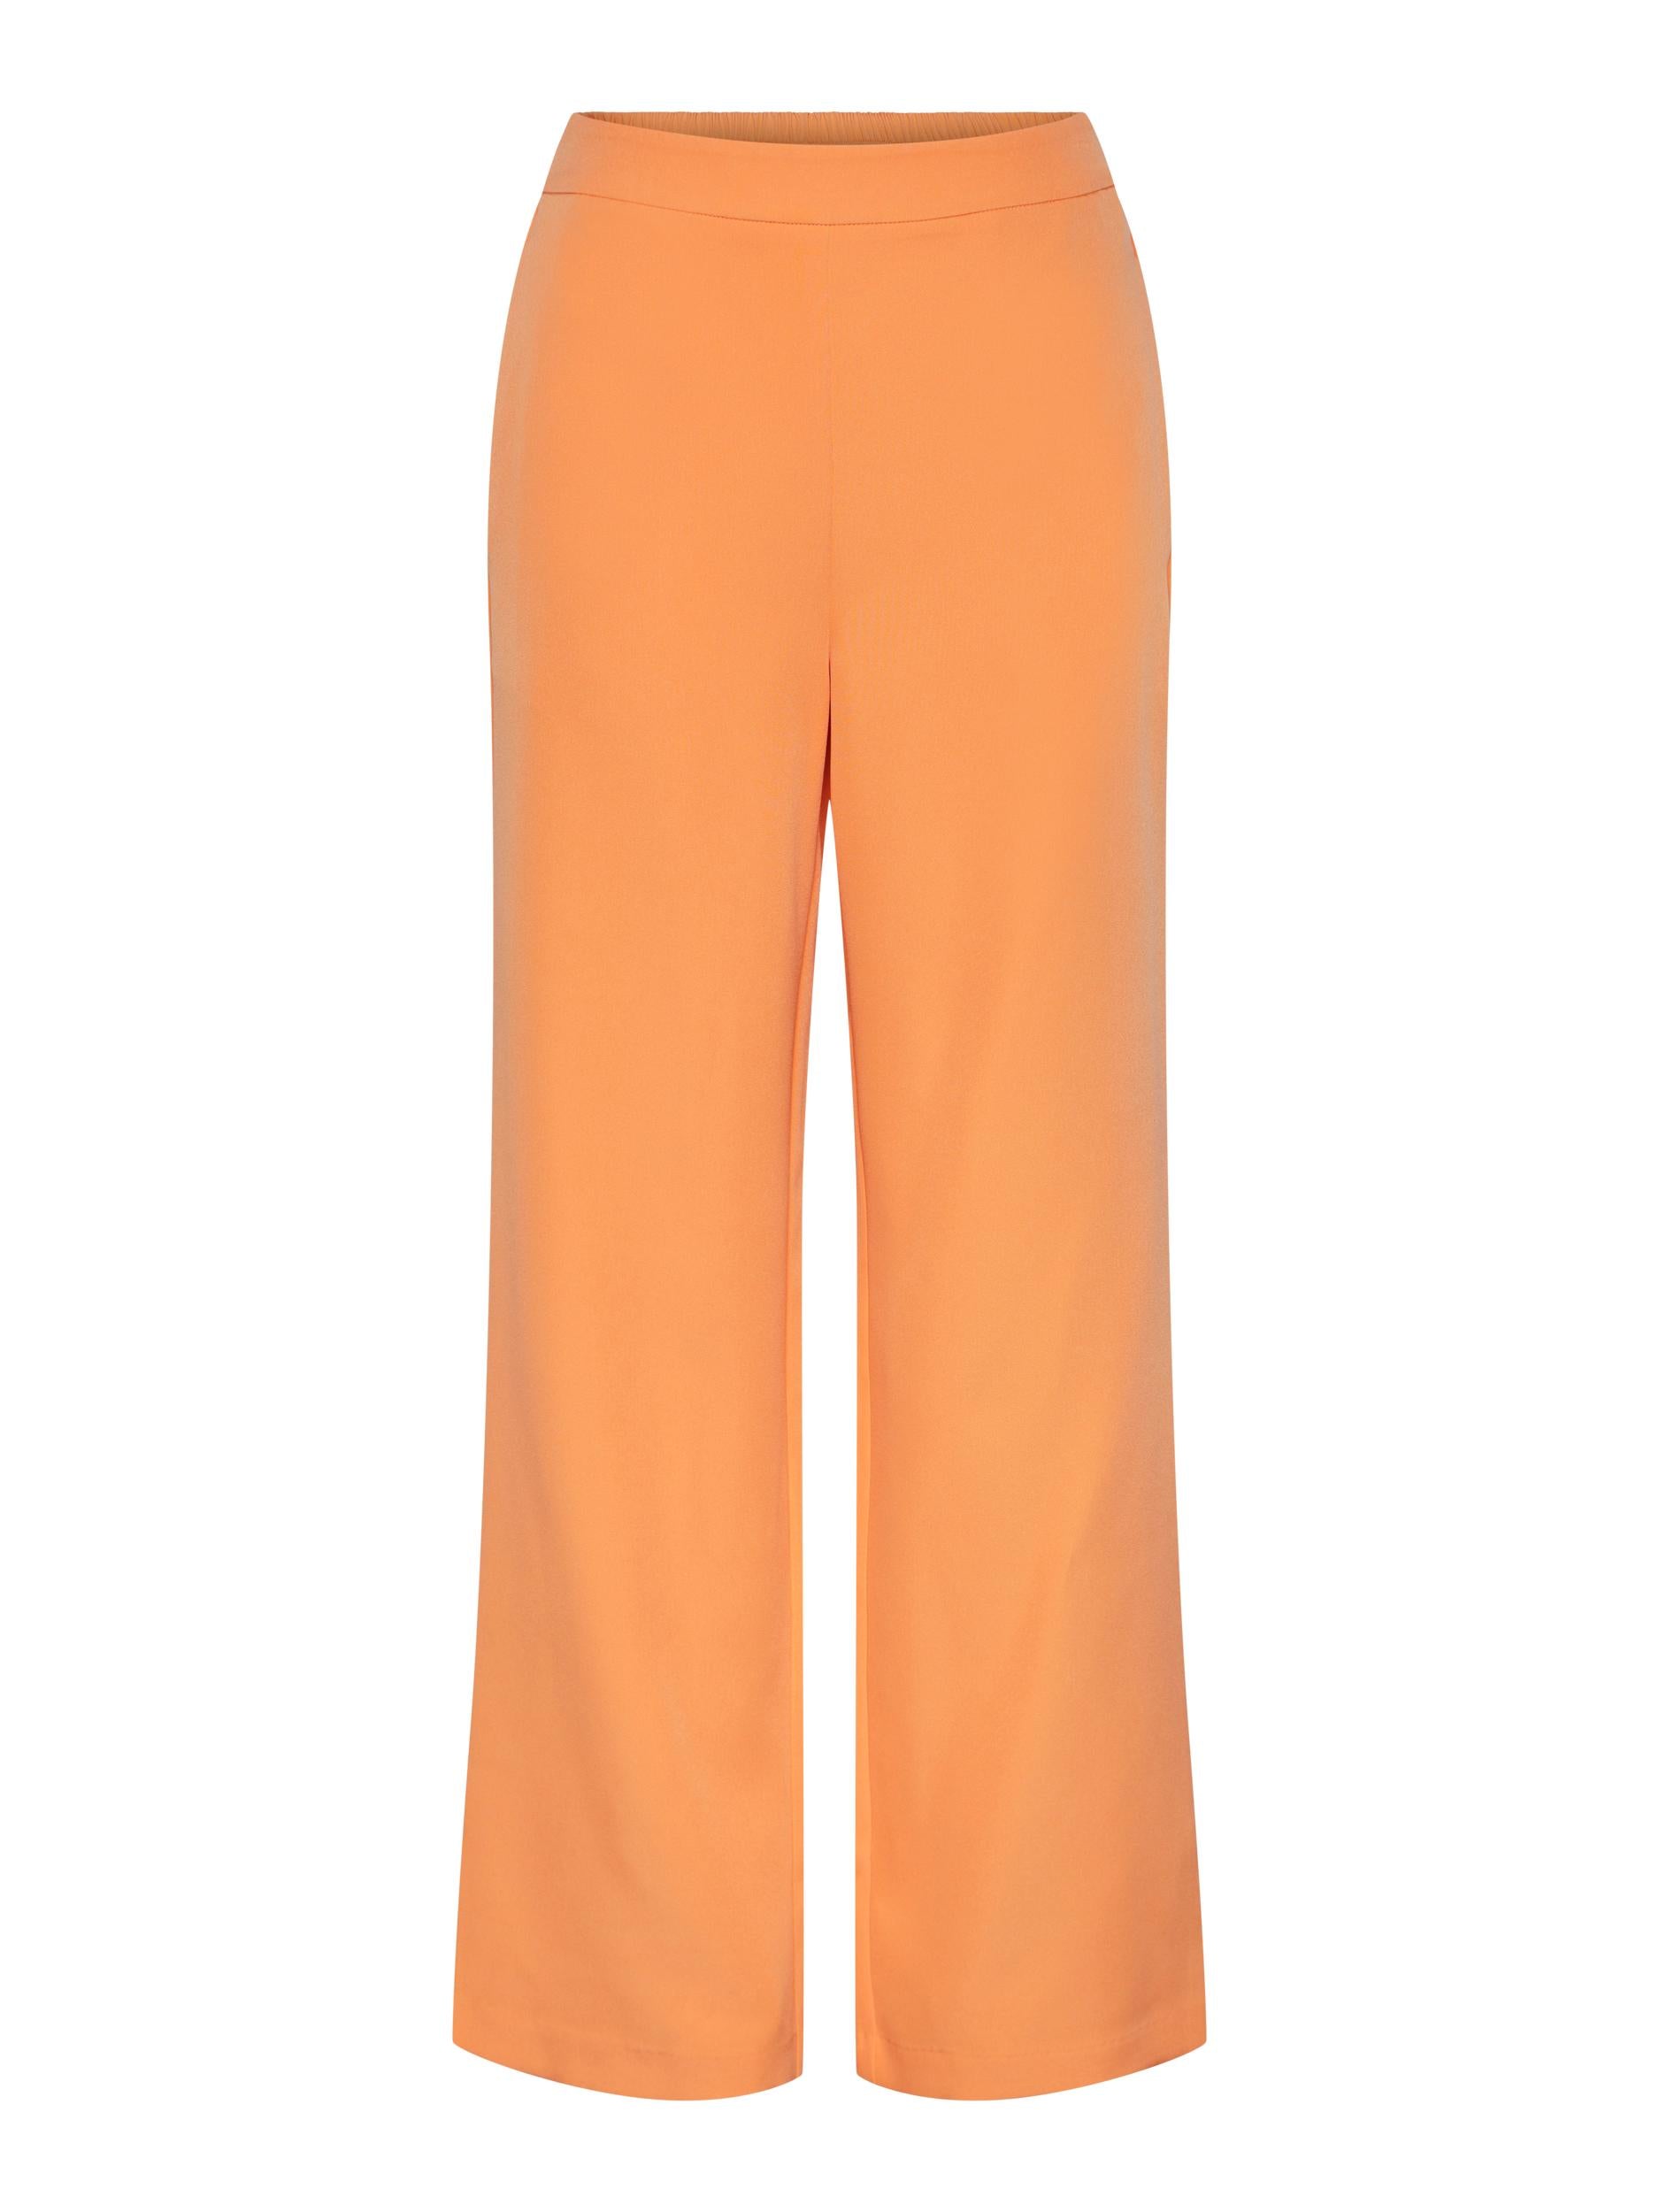 Pieces pantaloni arancio sartoriali con fondo ampio